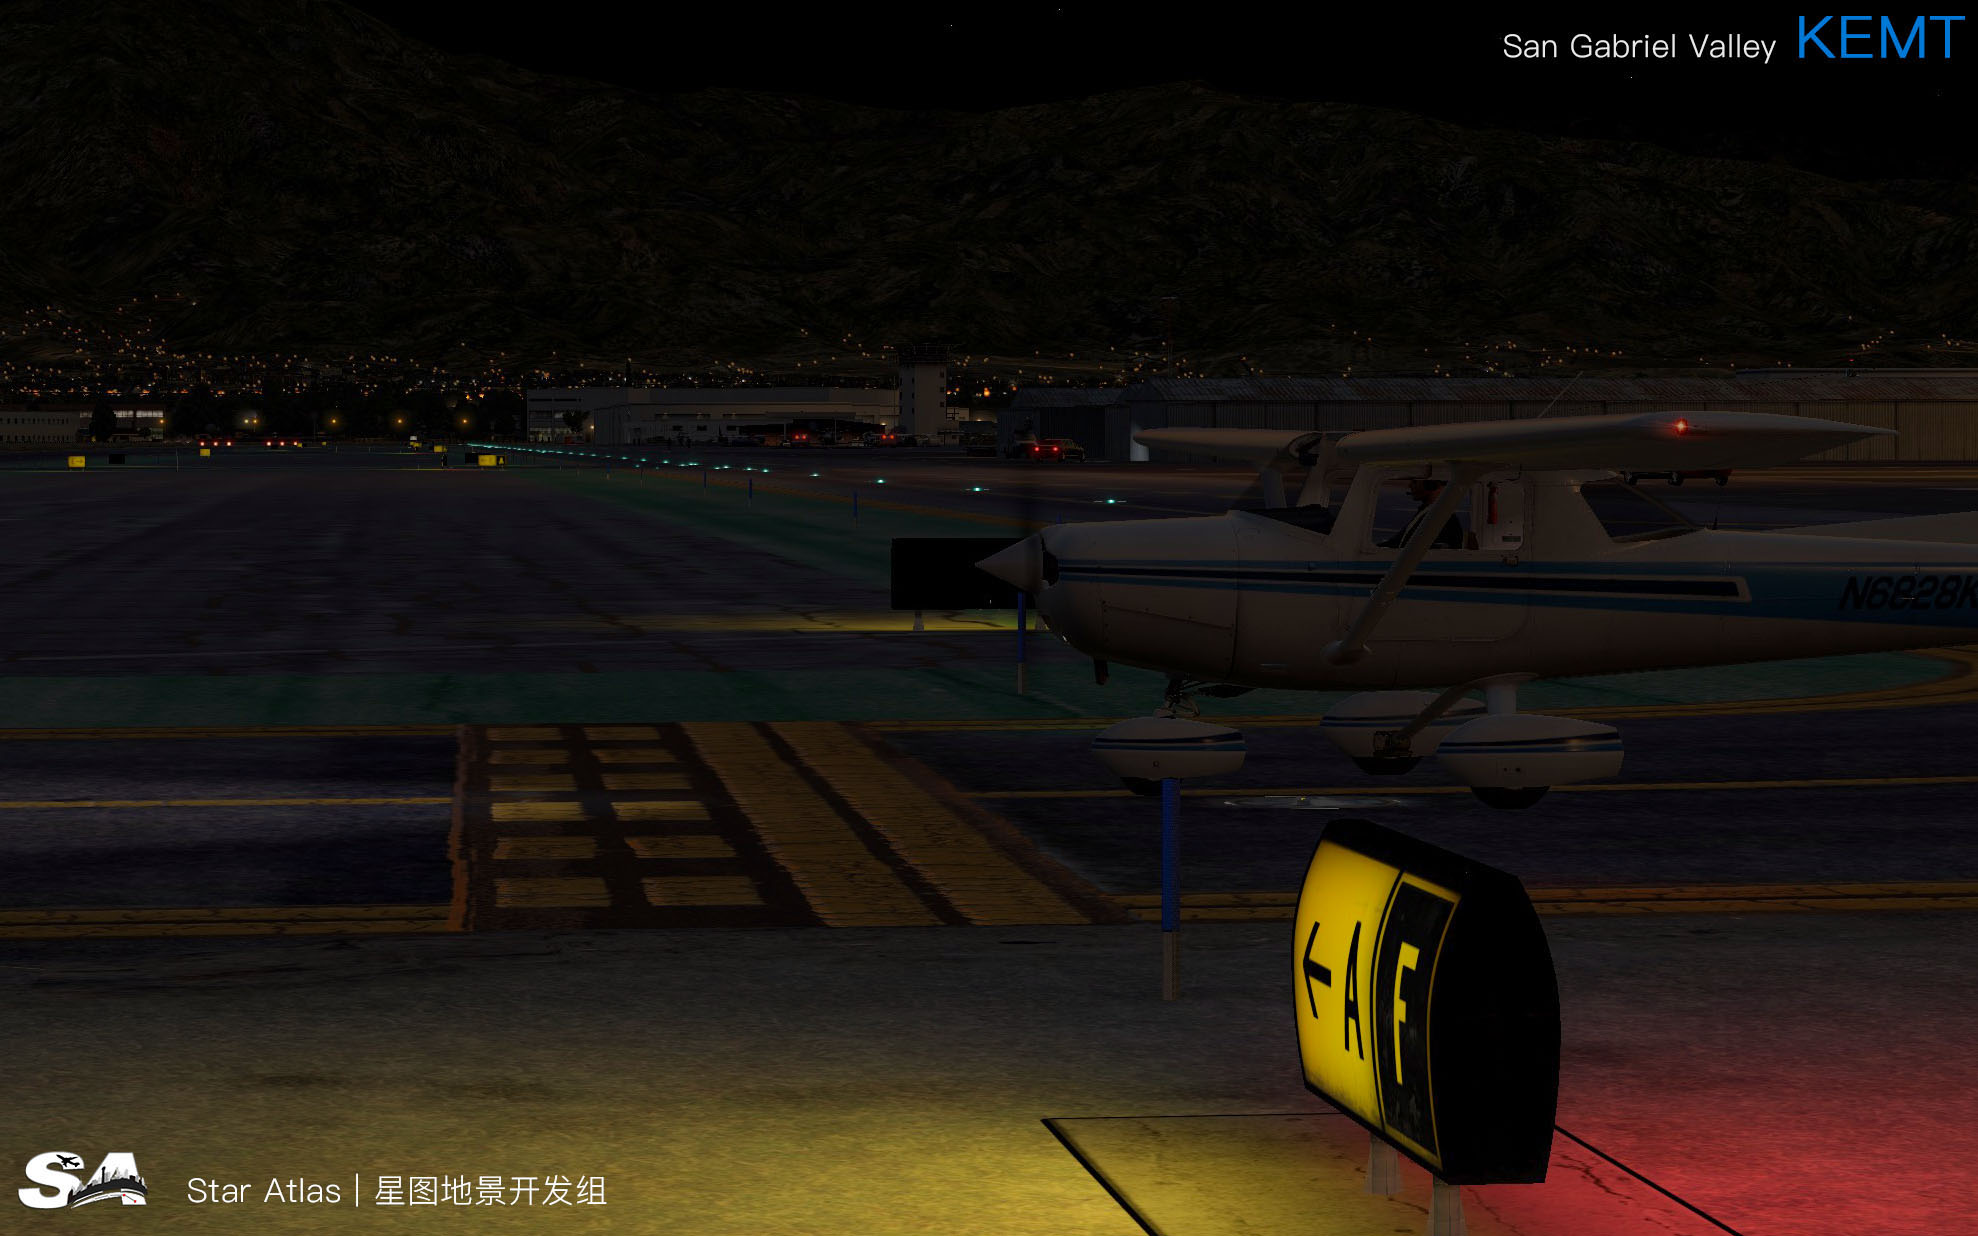 【X-Plane】KEMT-圣盖博谷机场 HD 1.0-4220 